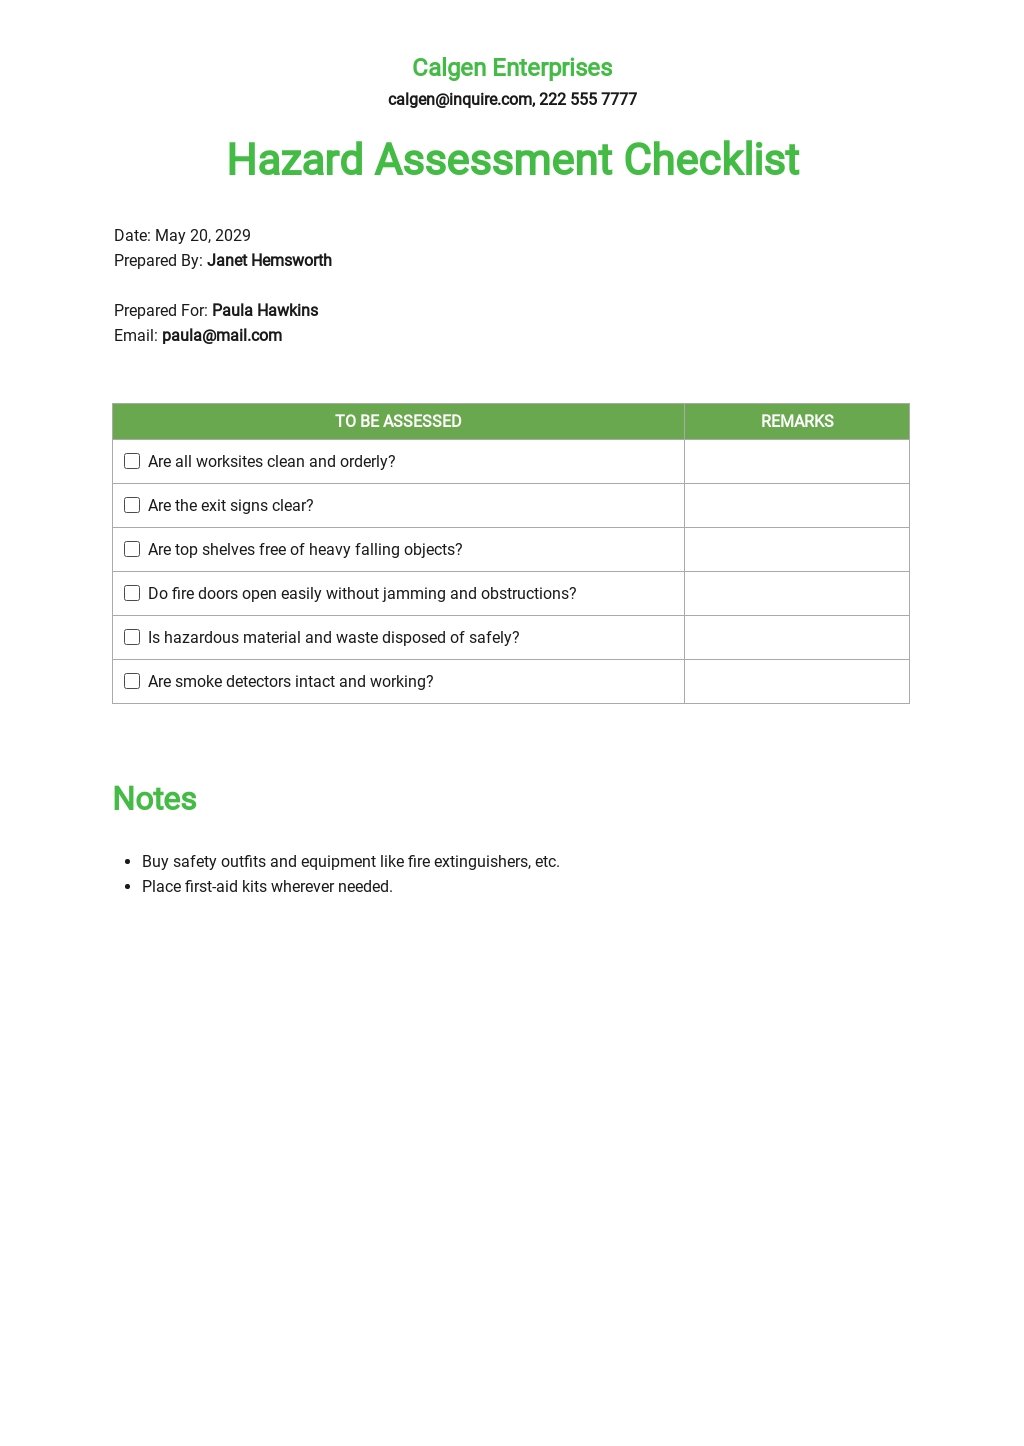 General Hazard Assessment Checklist Template.jpe